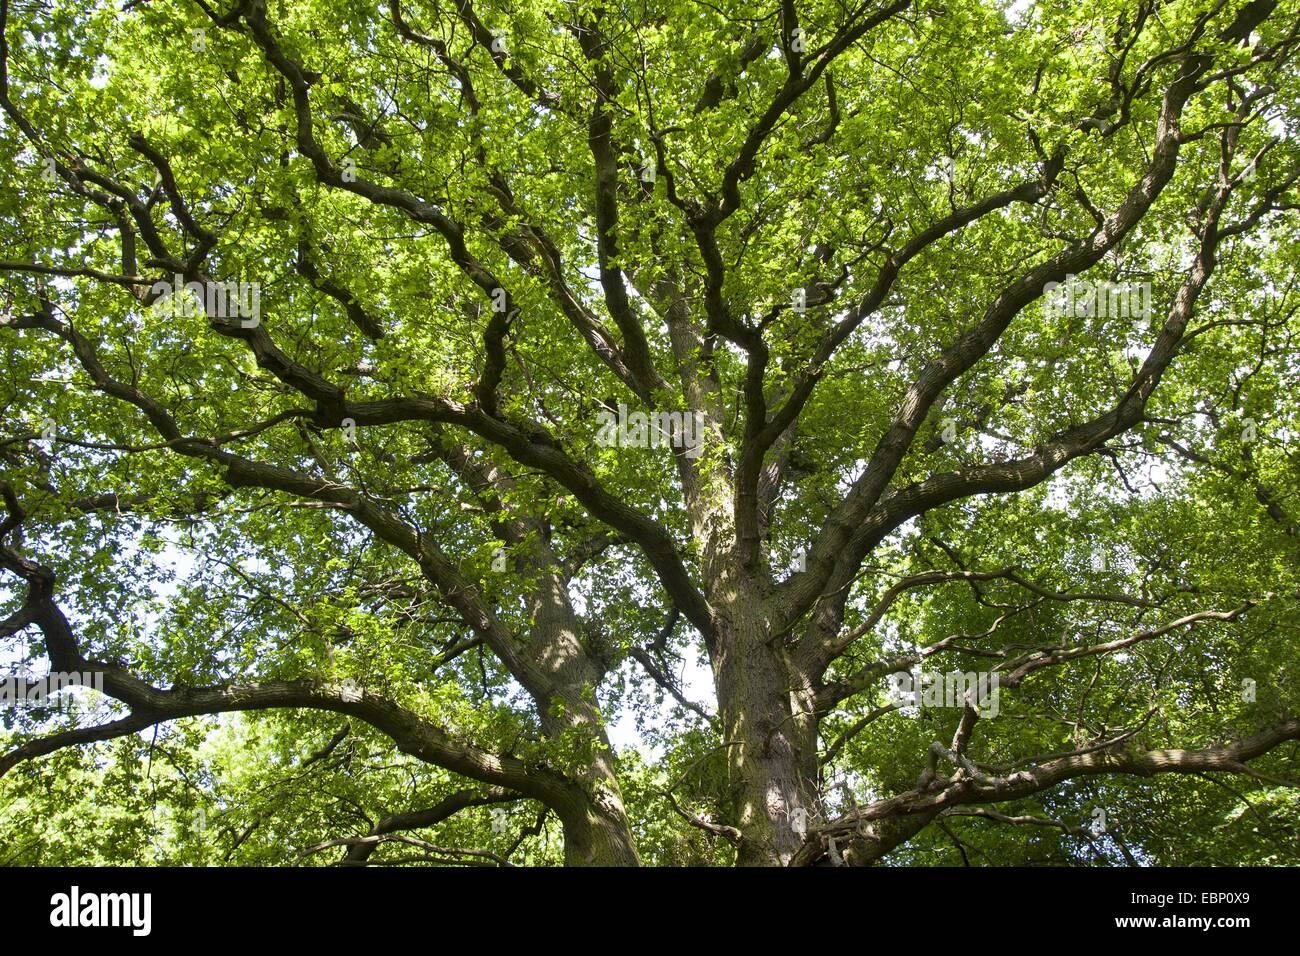 Le chêne commun, le chêne pédonculé, chêne pédonculé (Quercus robur), vue de la couronne d'en bas, Allemagne Banque D'Images